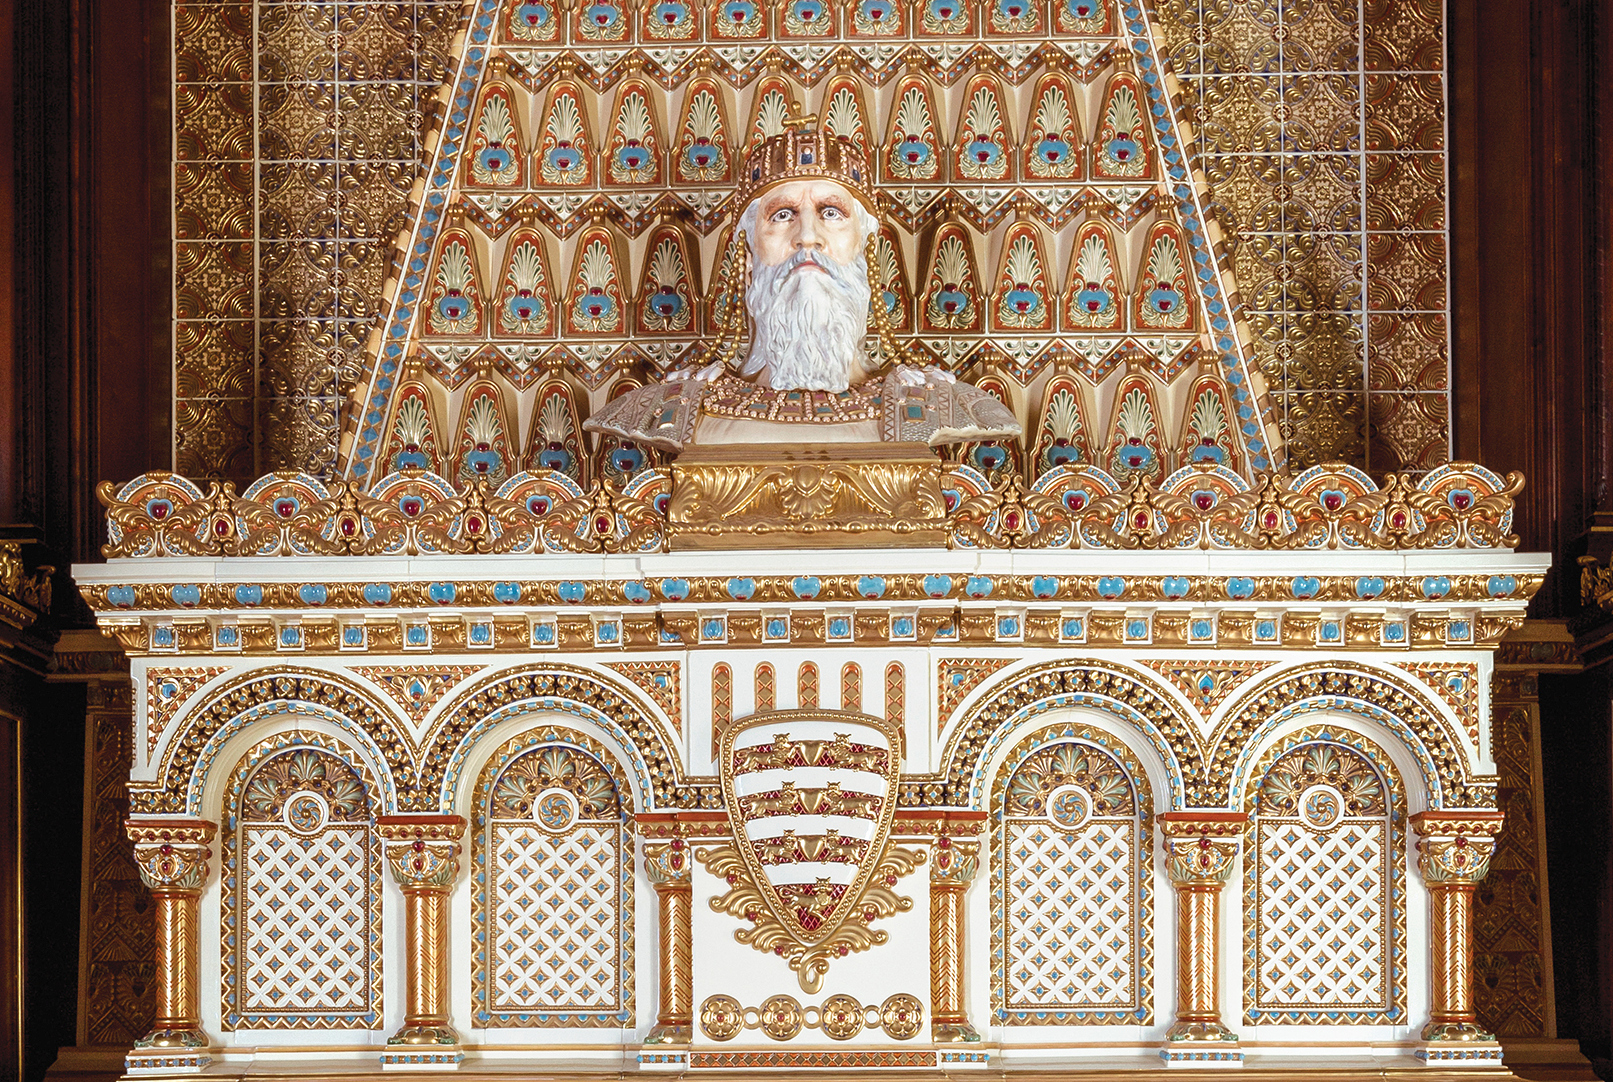 István király eredetileg Strobl Alajos által mintázott mellszobra (a büszt az általa díszített kandallóval együtt a Zsolnay-gyárban készült)